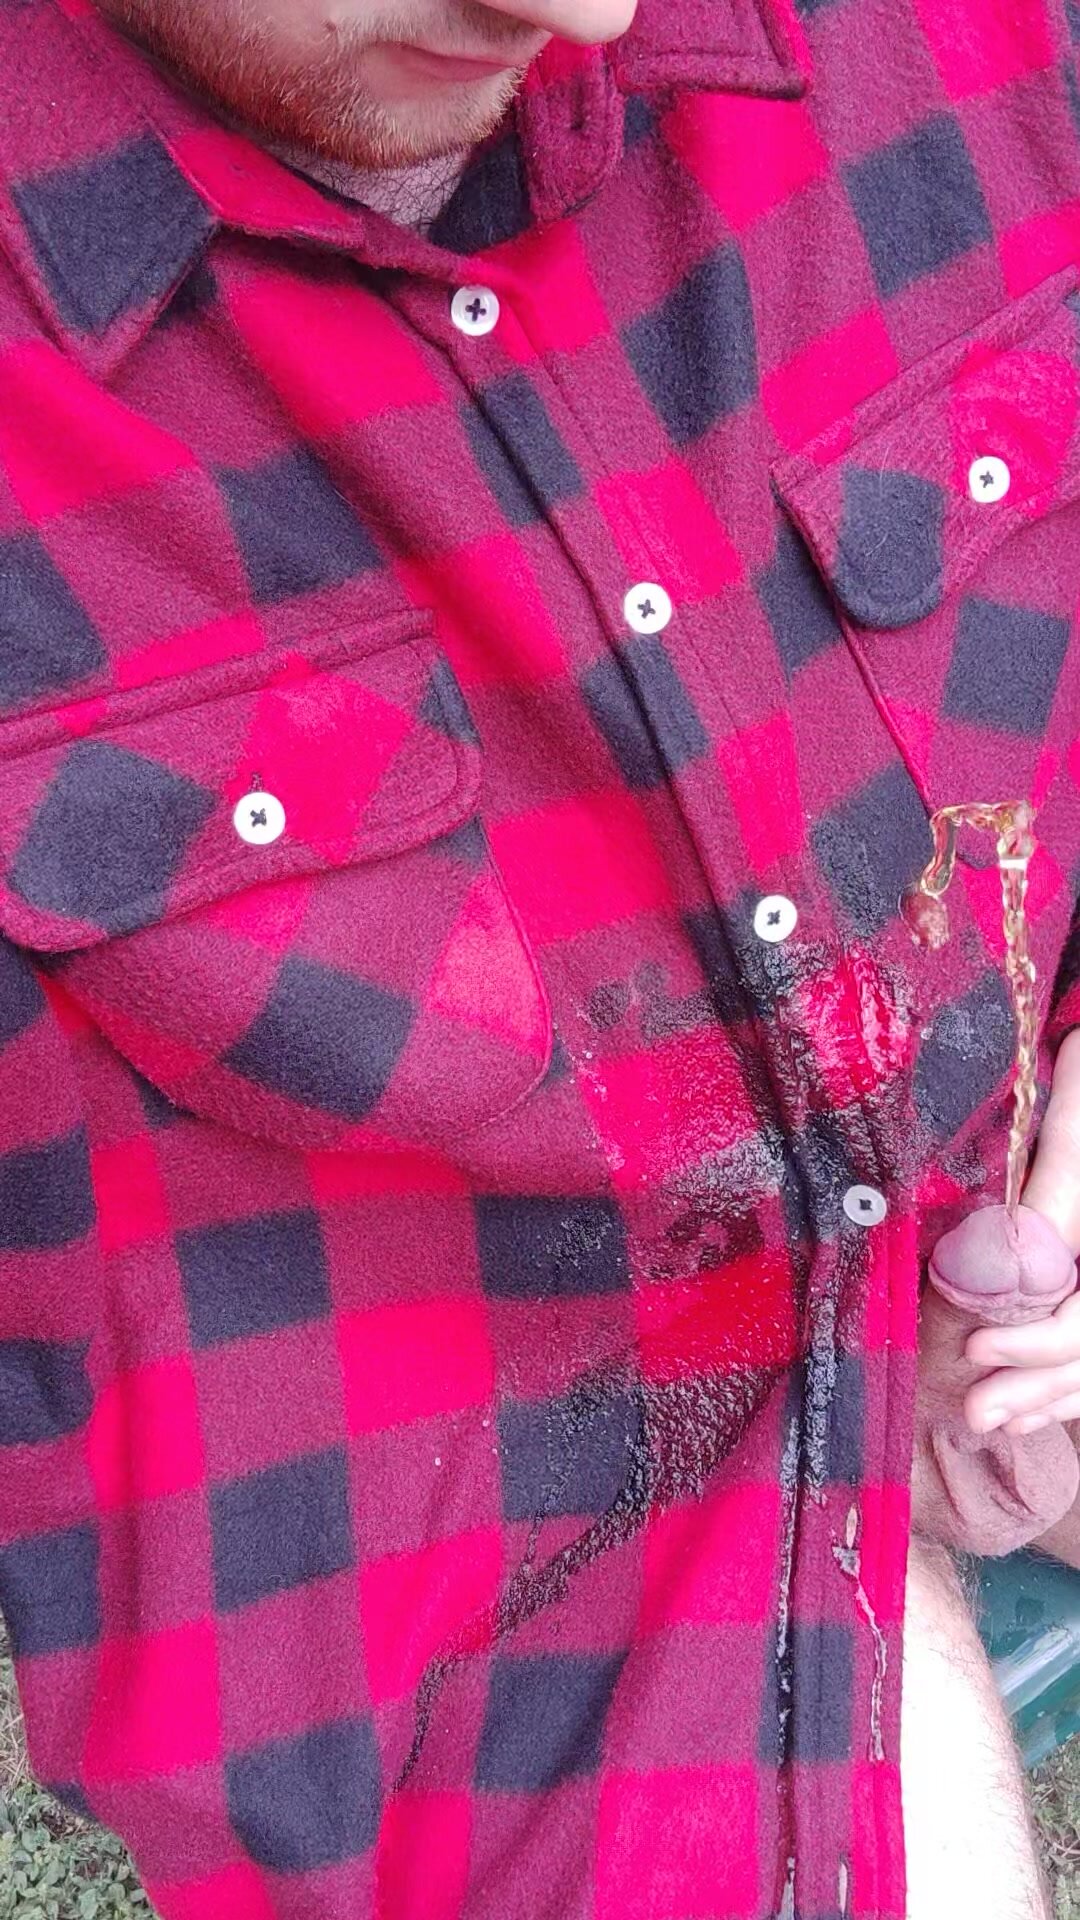 lumberjack shirt piss